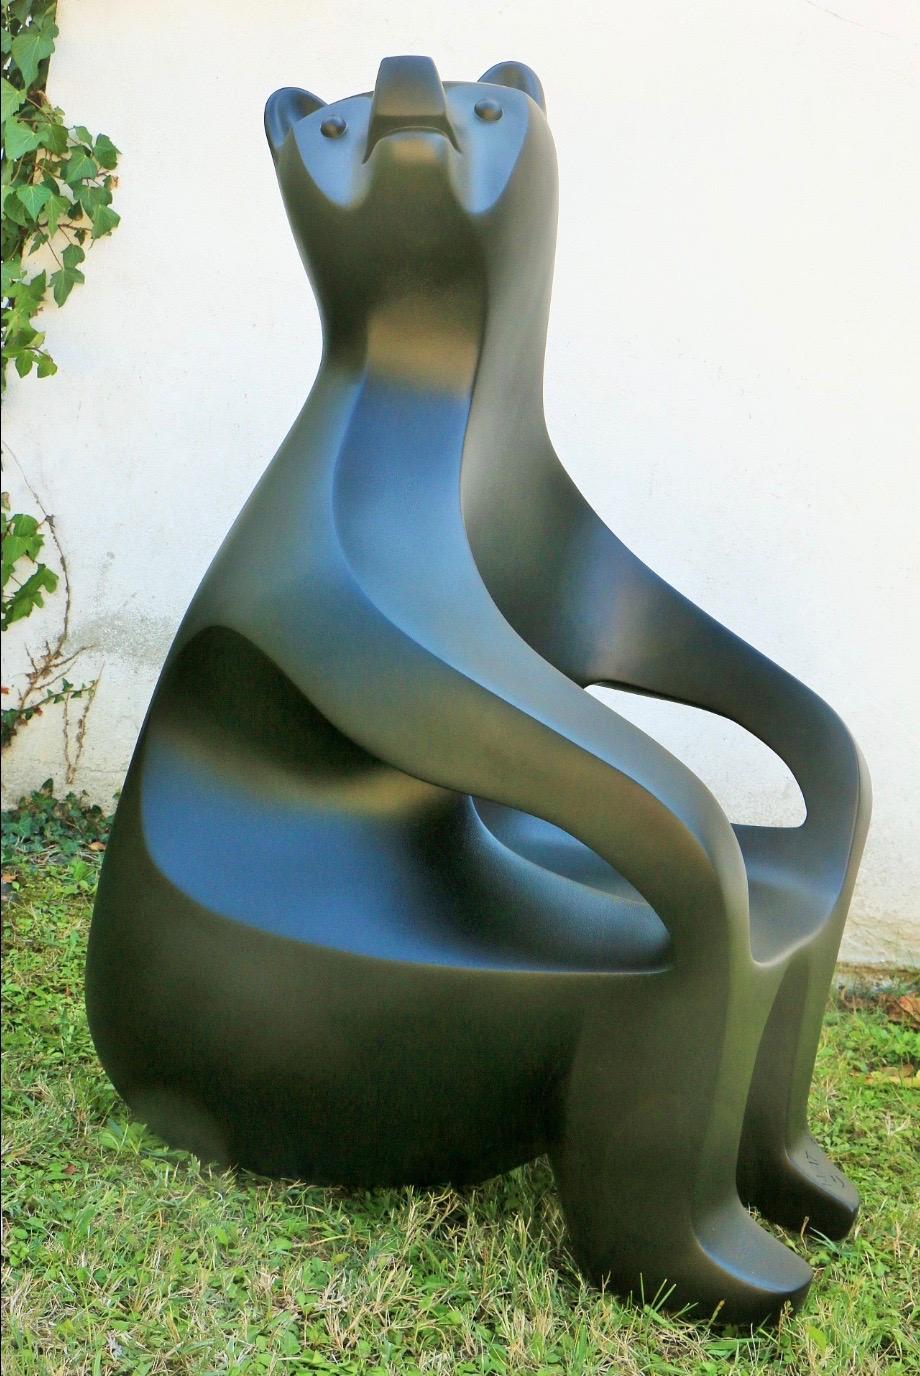 functional sculptures